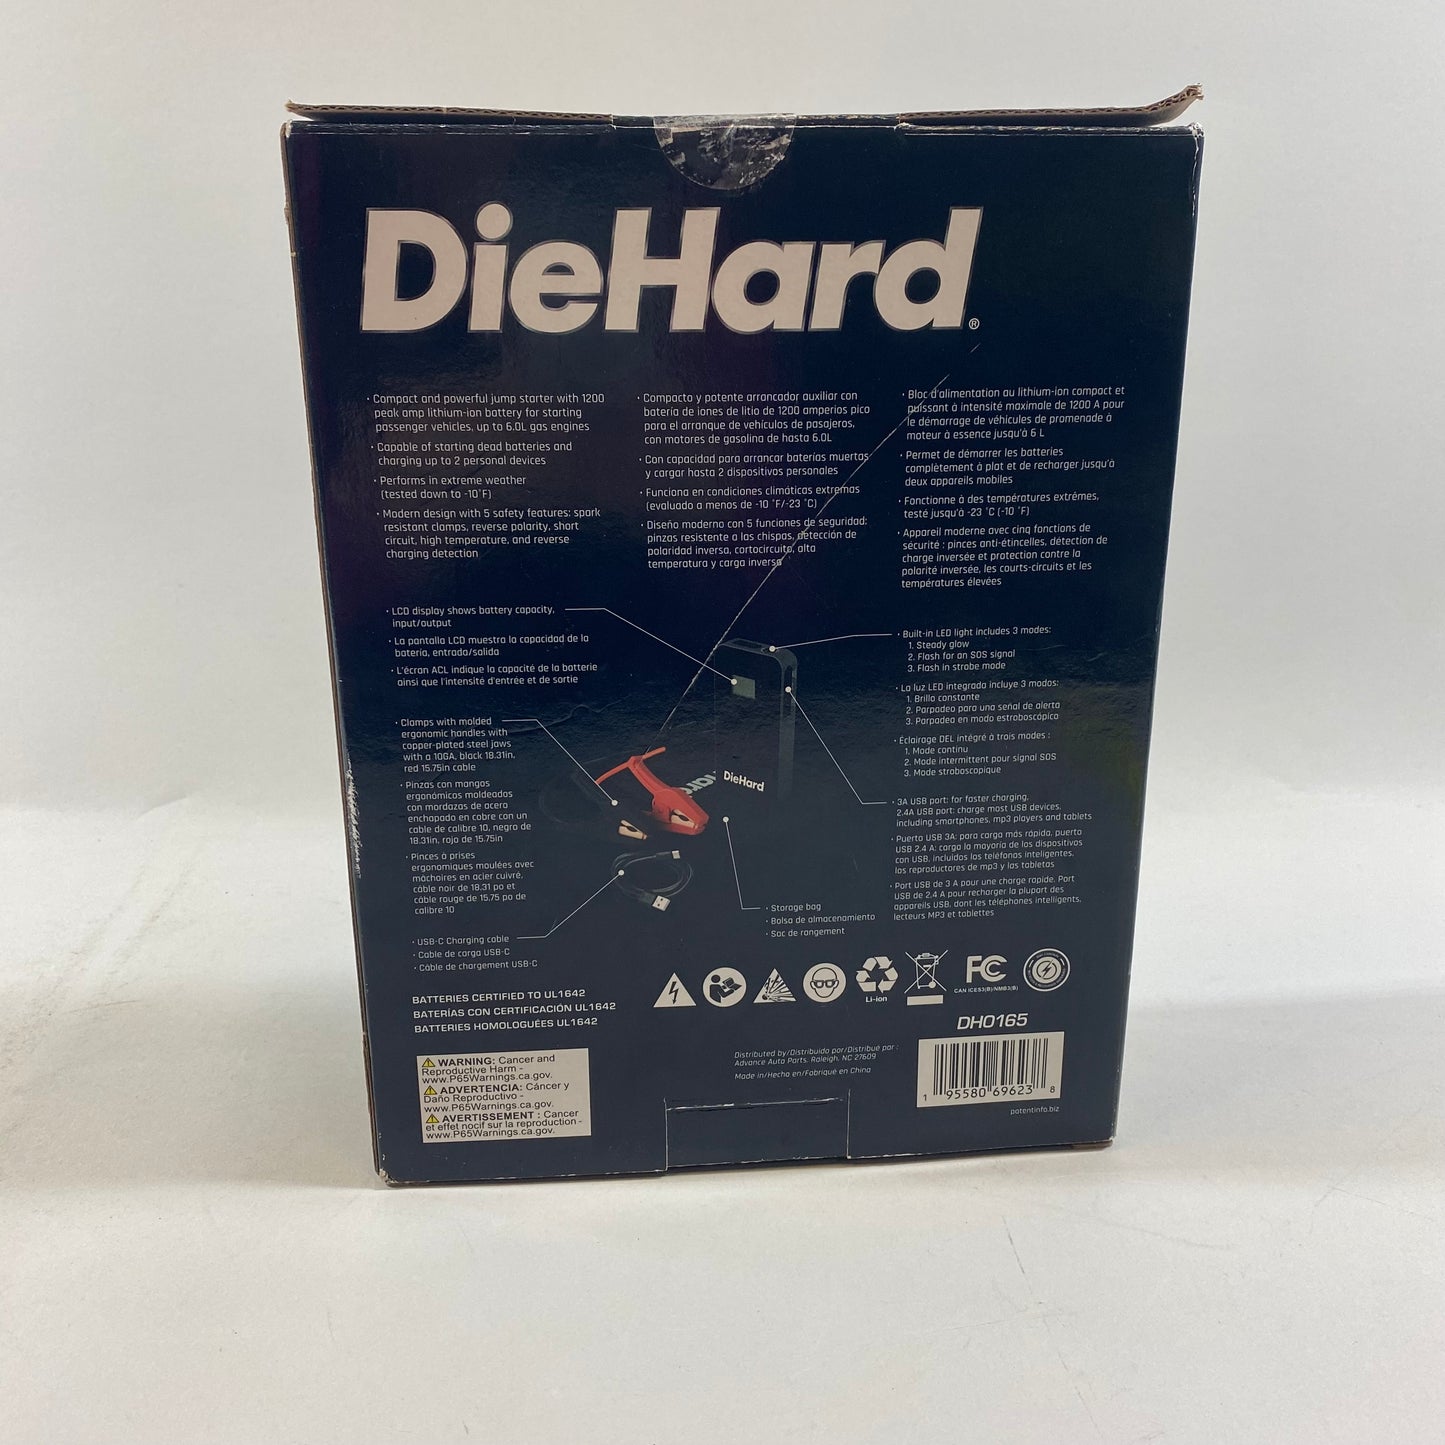 New Diehard DH0165 12V Jump Starter and Power Pack